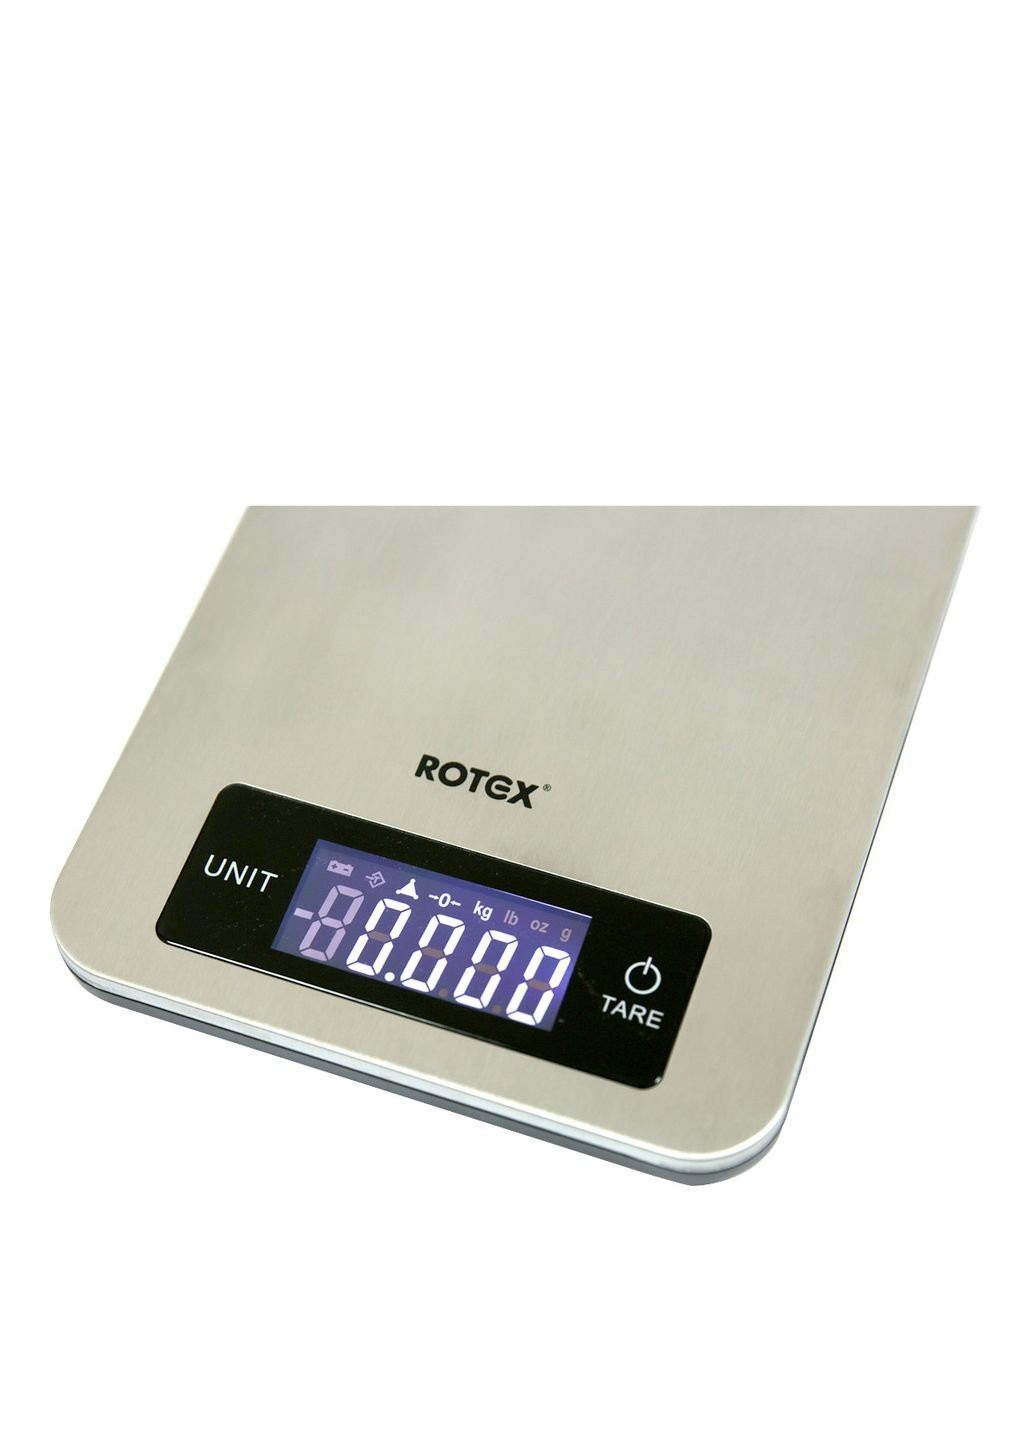 Весы кухонные RSK21-P Rotex (253616904)